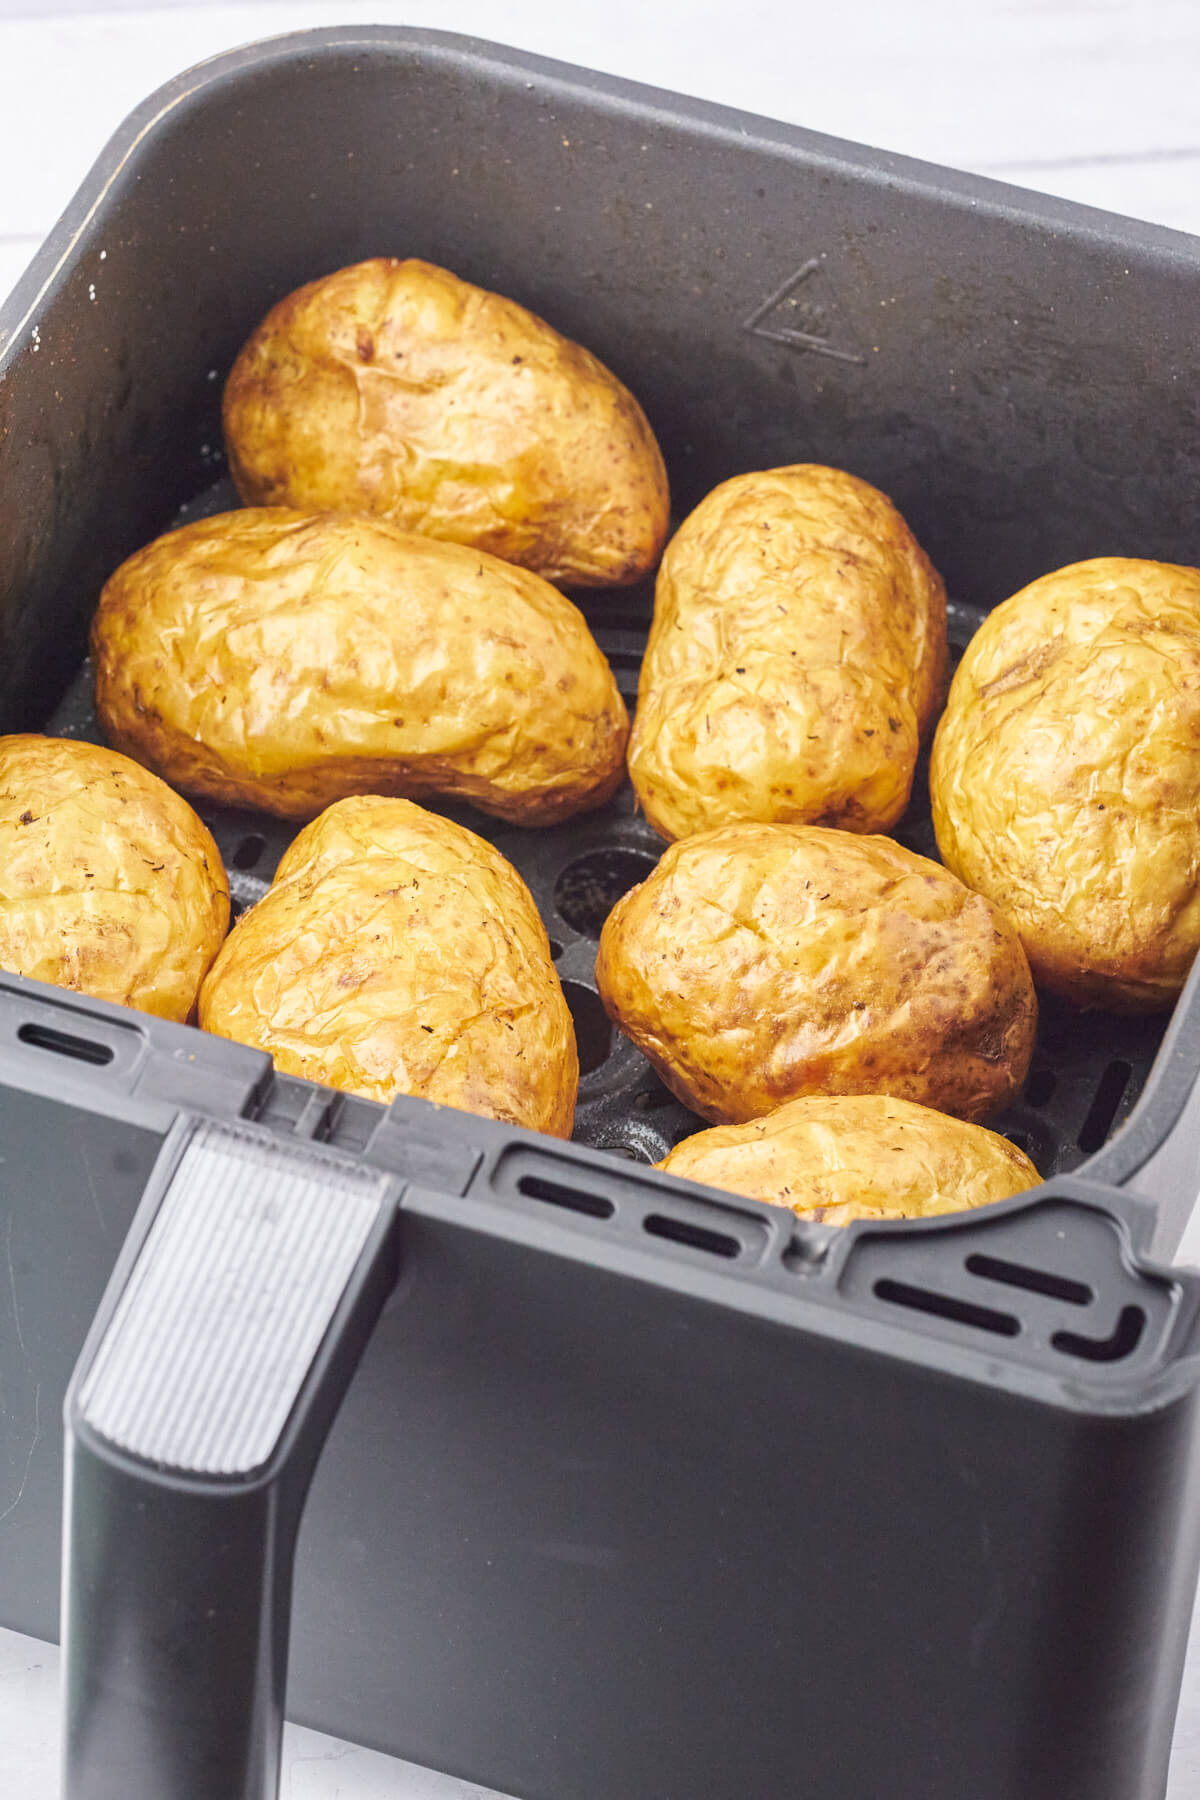 baked potatoes in air fryer basket